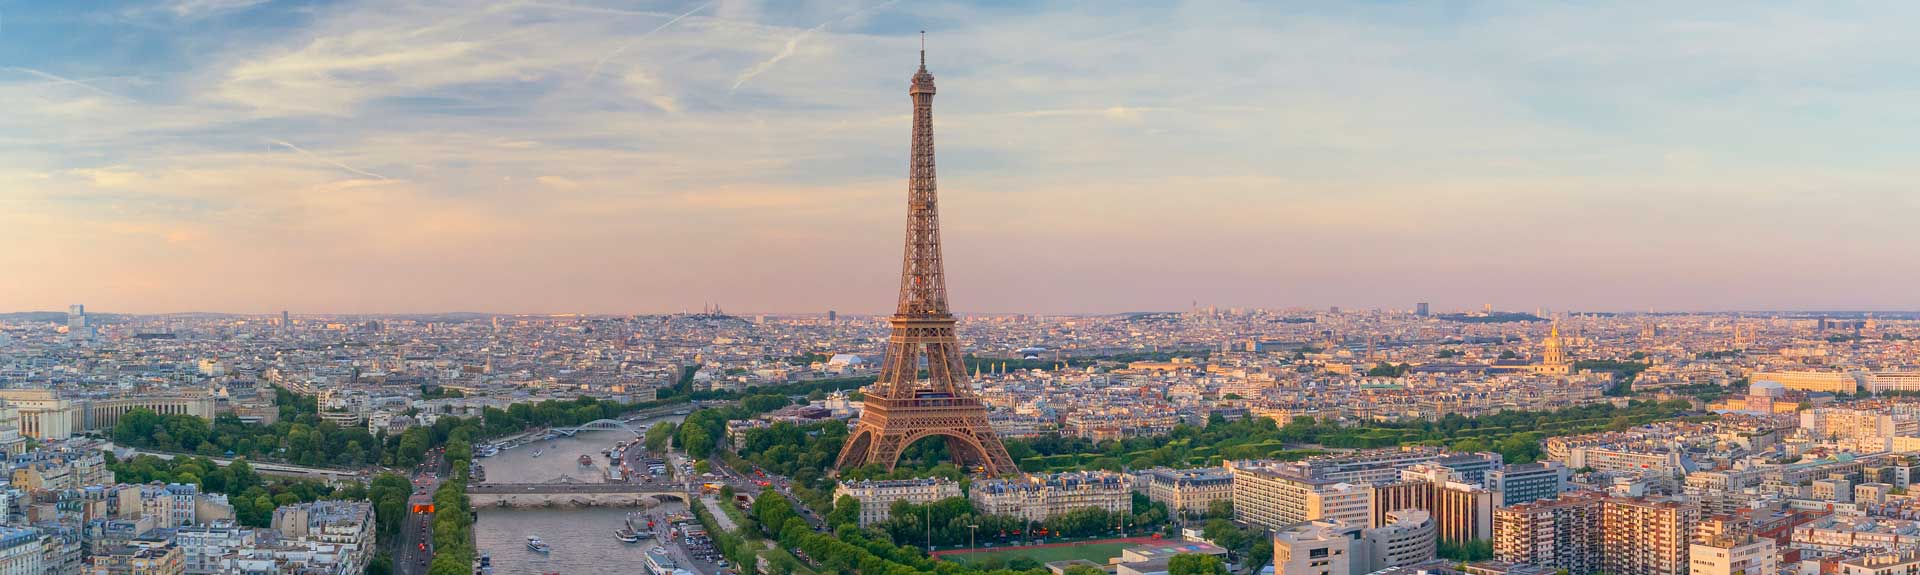 Nachhilfeunterricht Französisch - Eifelturm in Paris